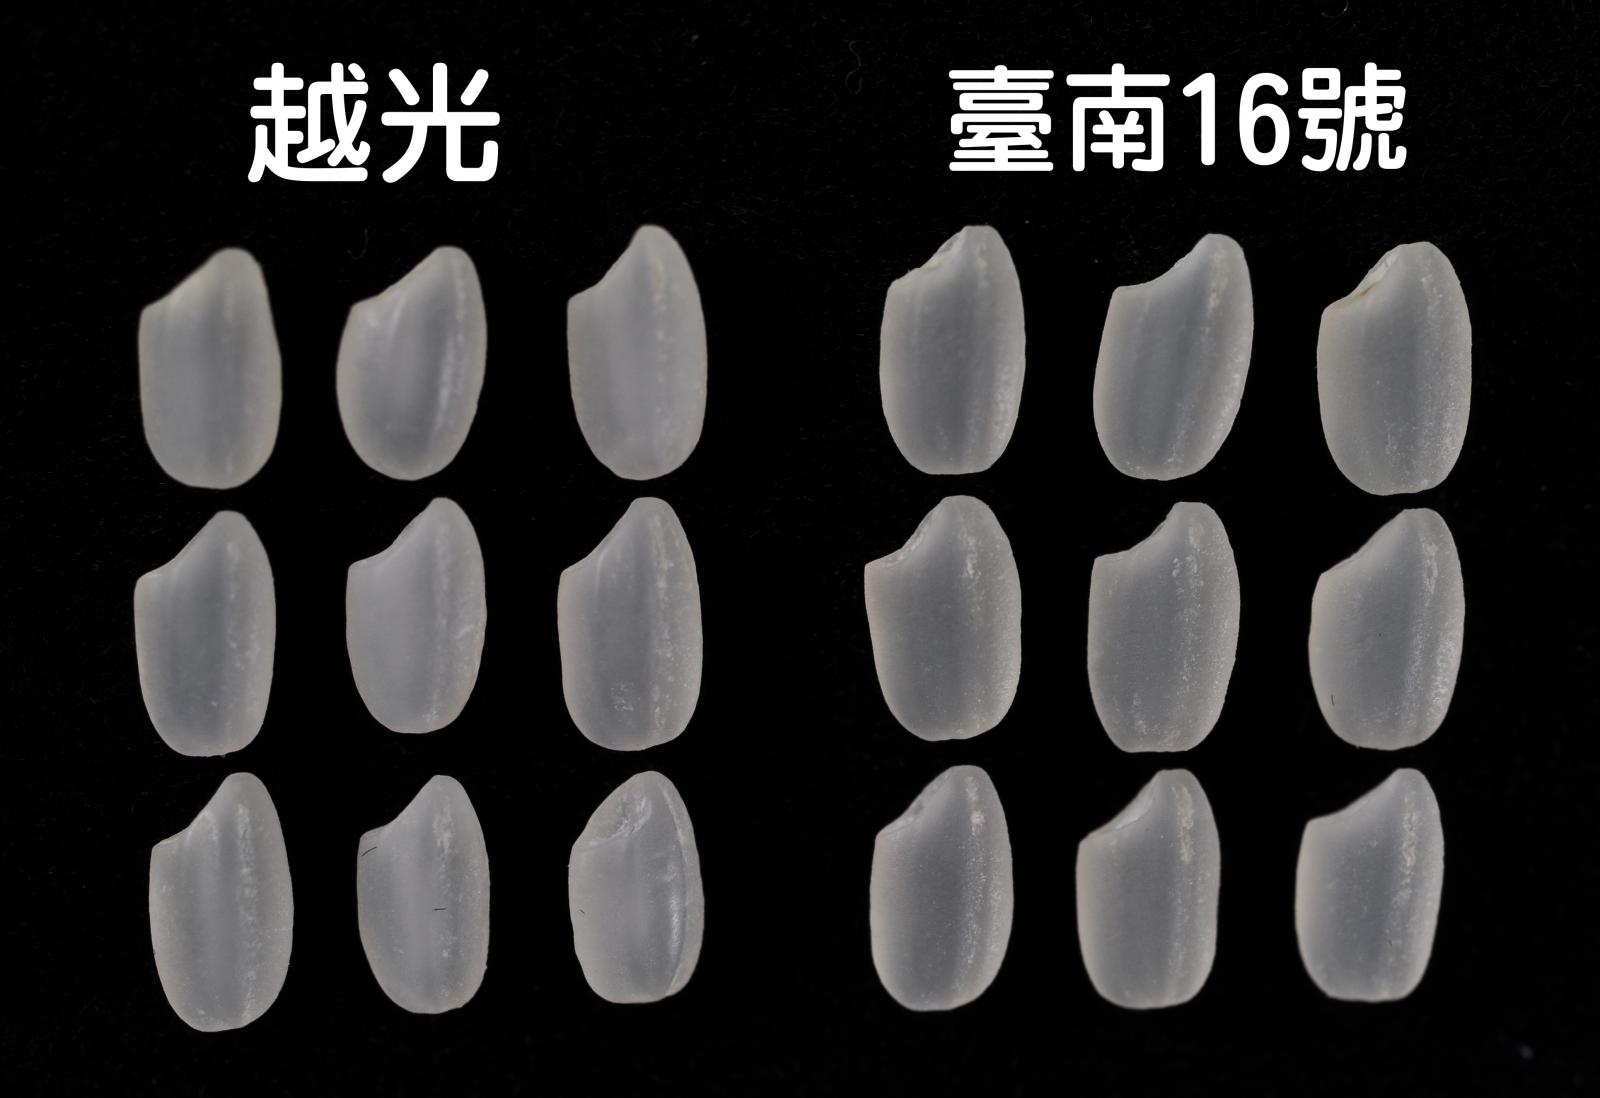 水稻臺南16號的白米外觀晶瑩剔透(右)，承襲越光(左)優良品質